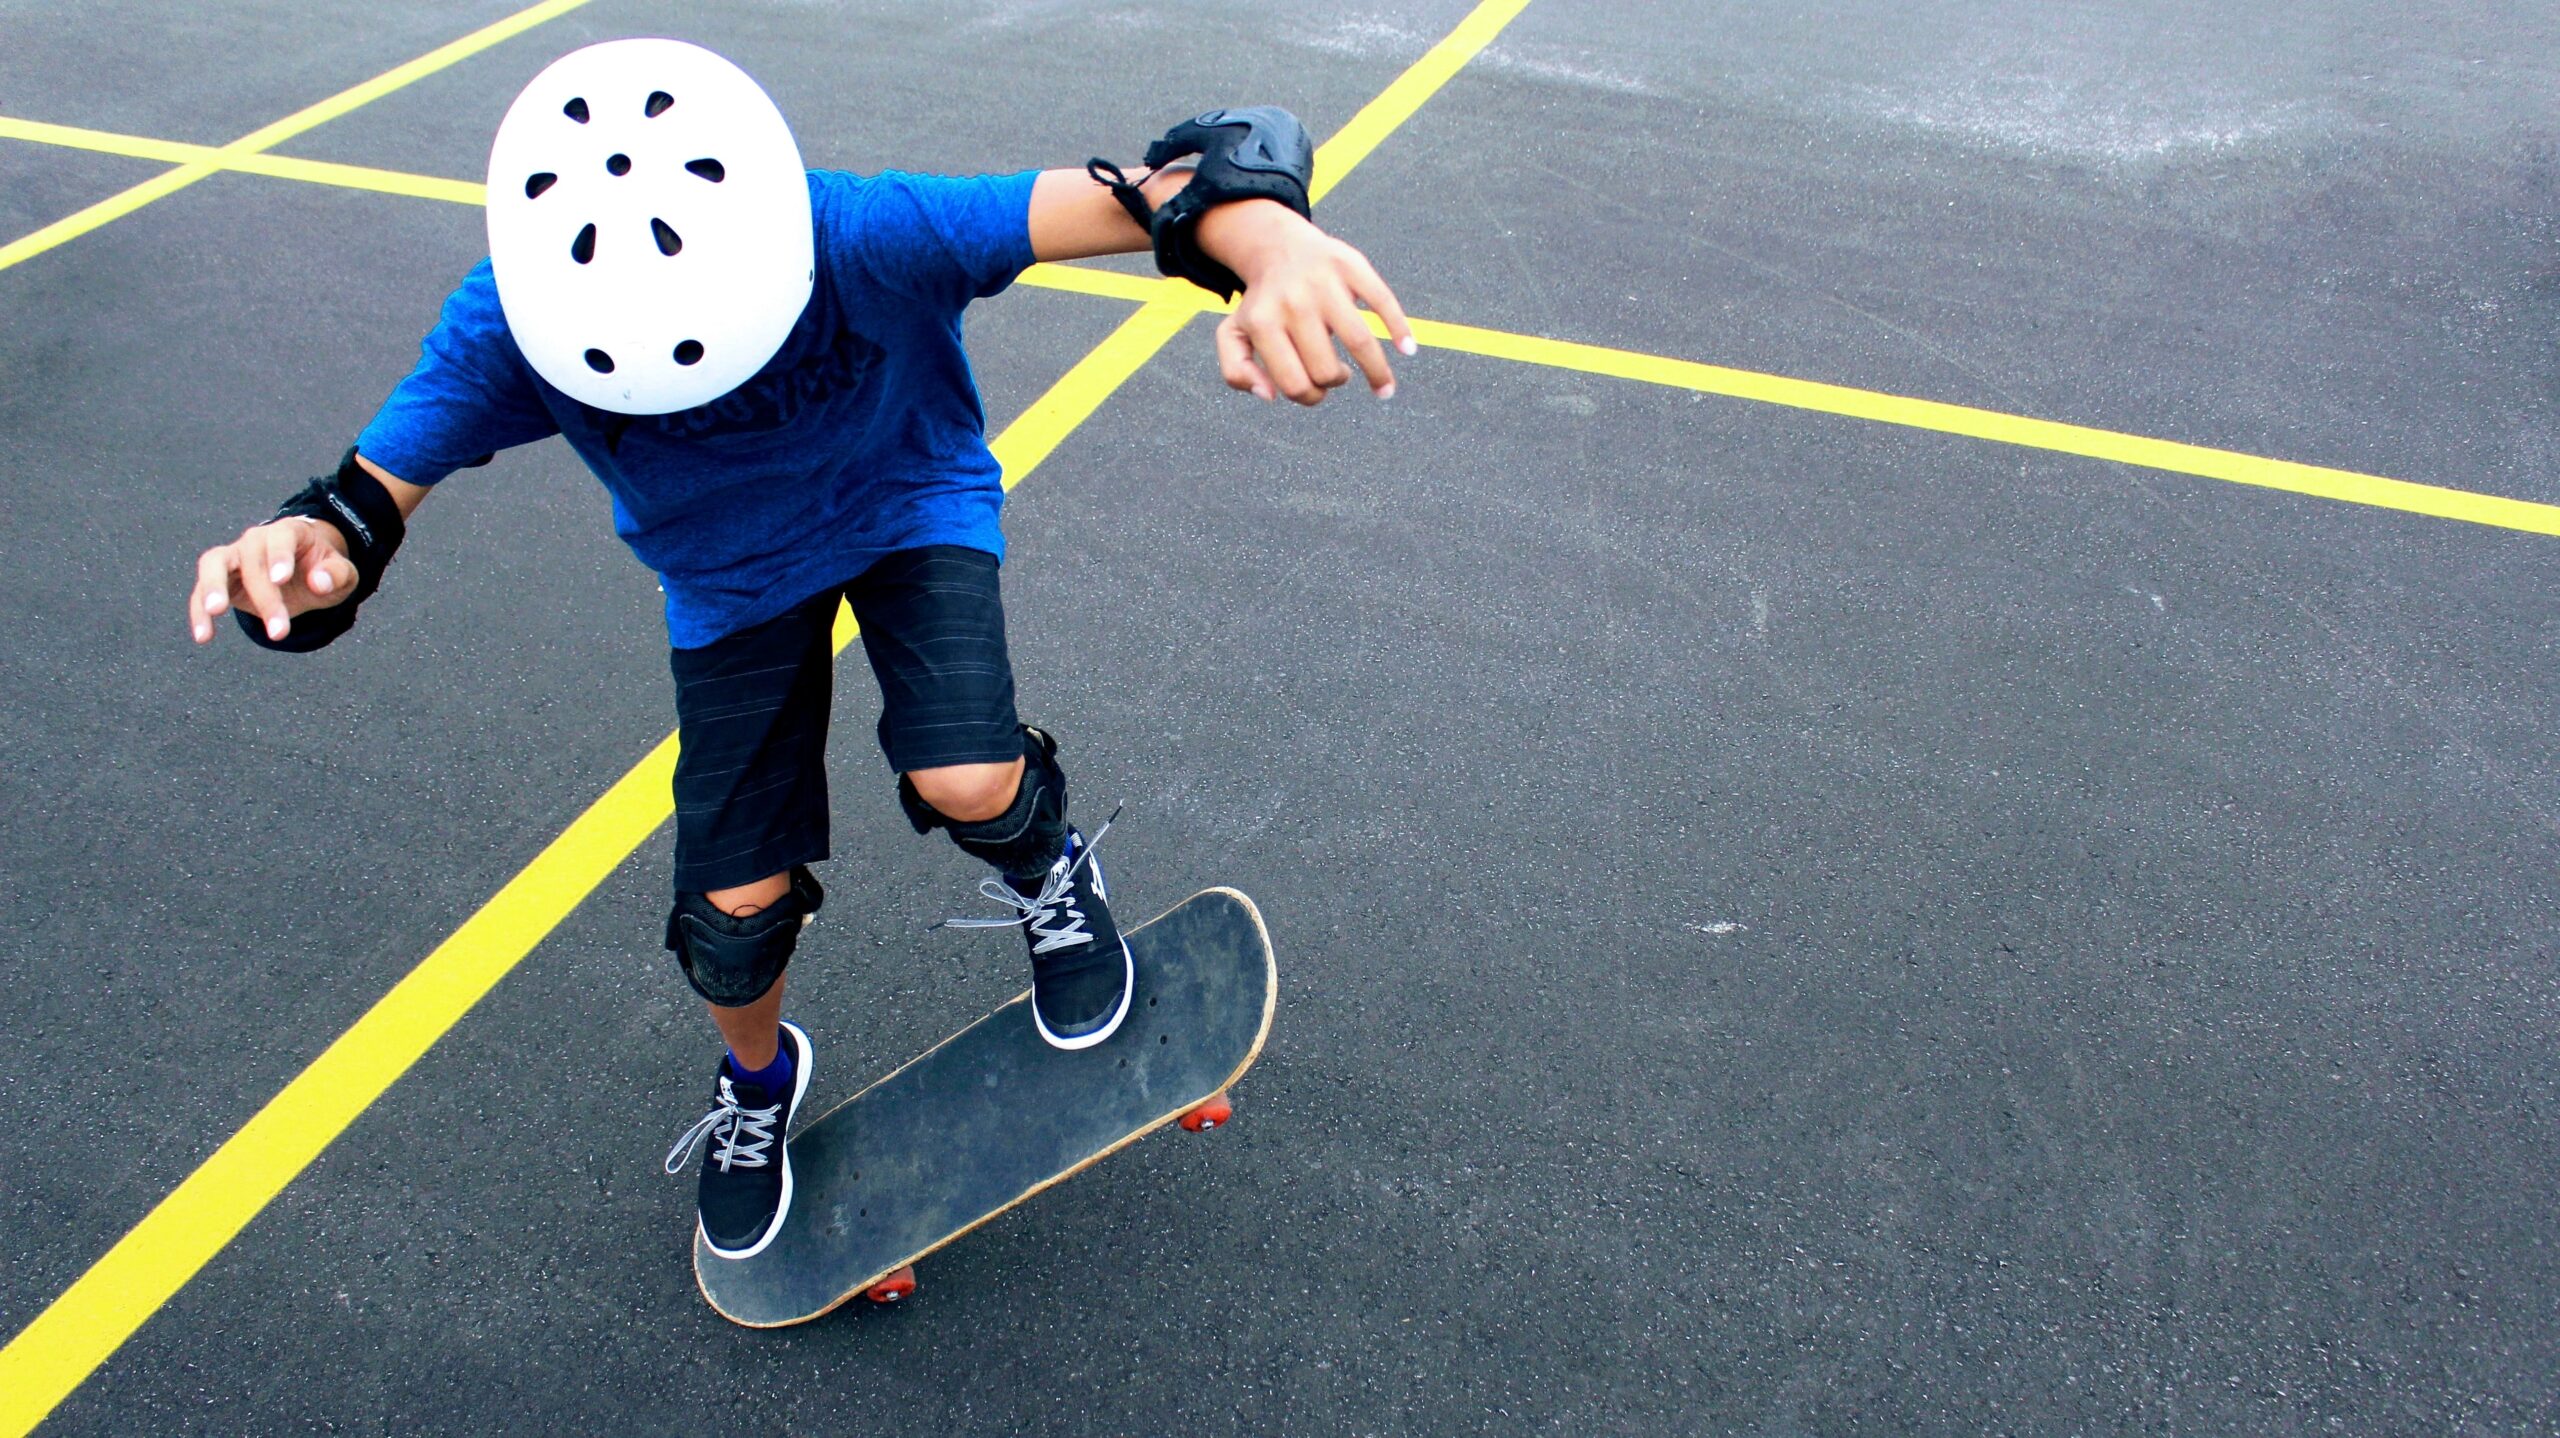 child, skating, skateboarding, hard court